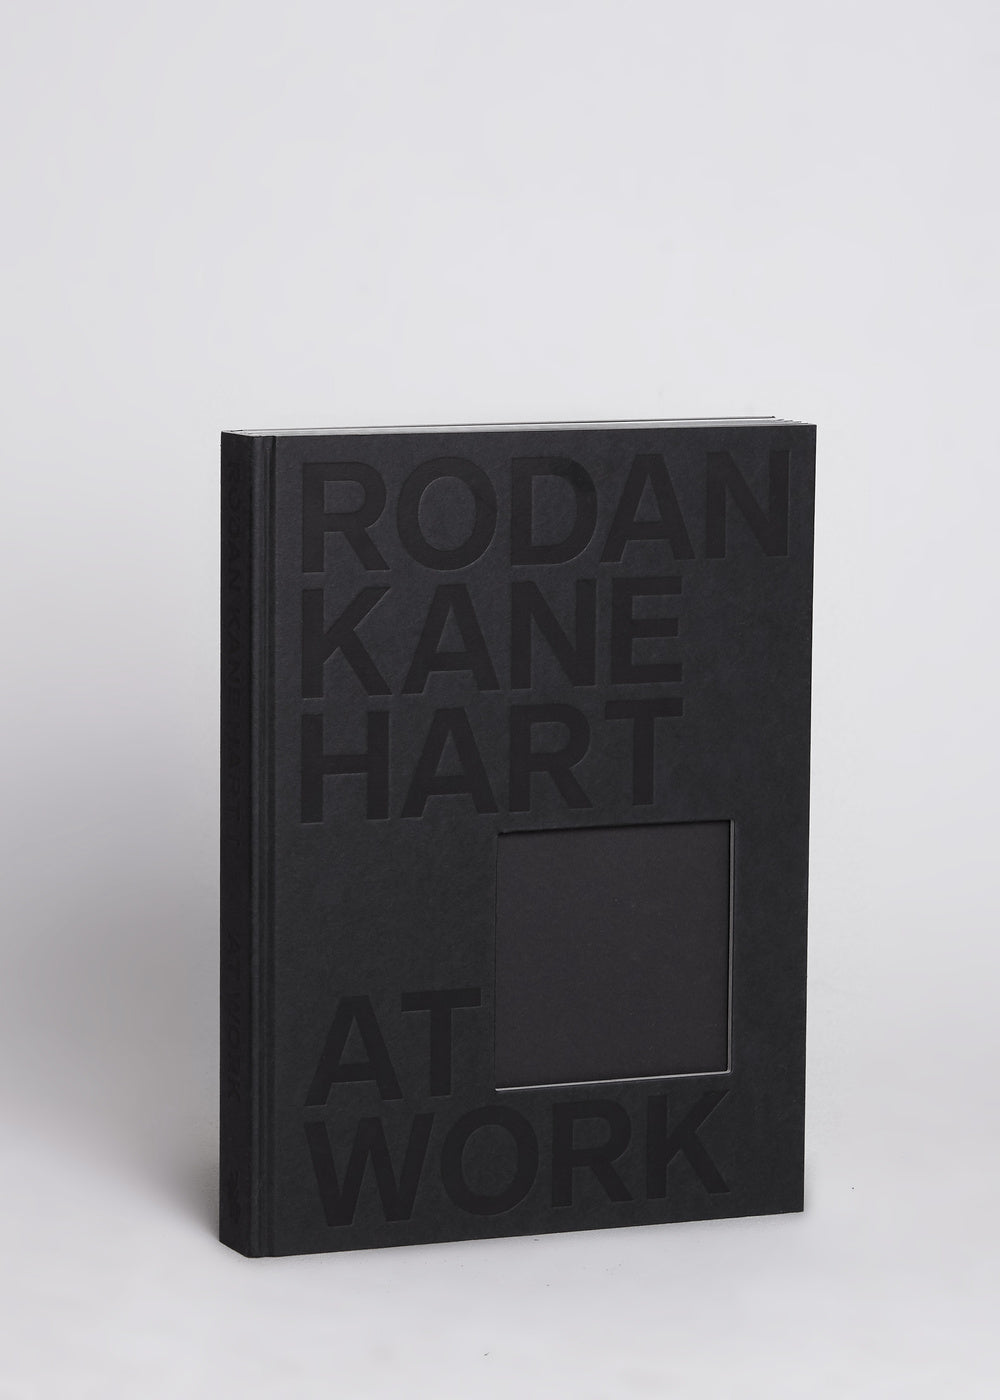 Rodan Kane Hart- At Work